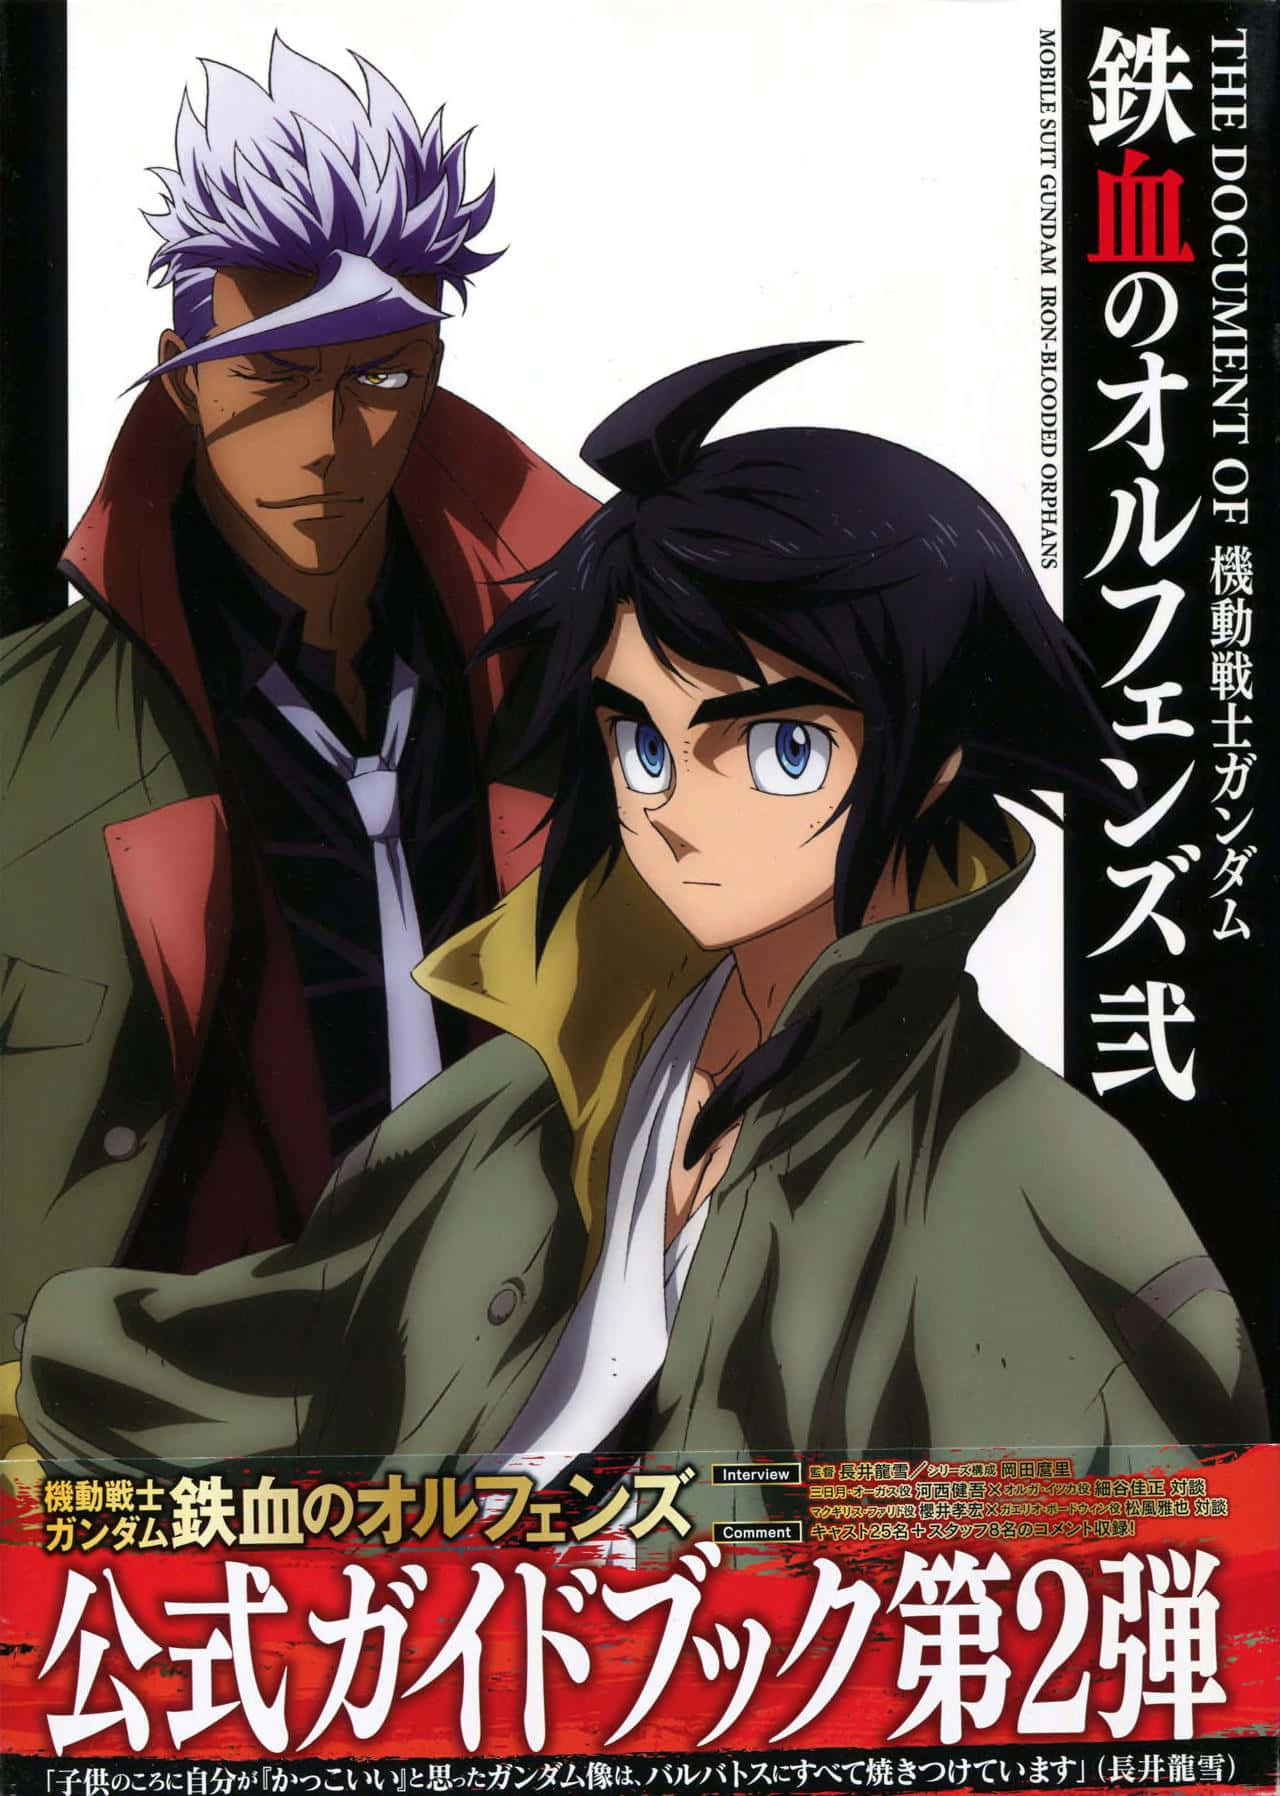 Mobilesuit Gundam Iron-blooded Orphans: El Testigo Desgarrado Por La Guerra Hacia Un Nuevo Futuro. Fondo de pantalla